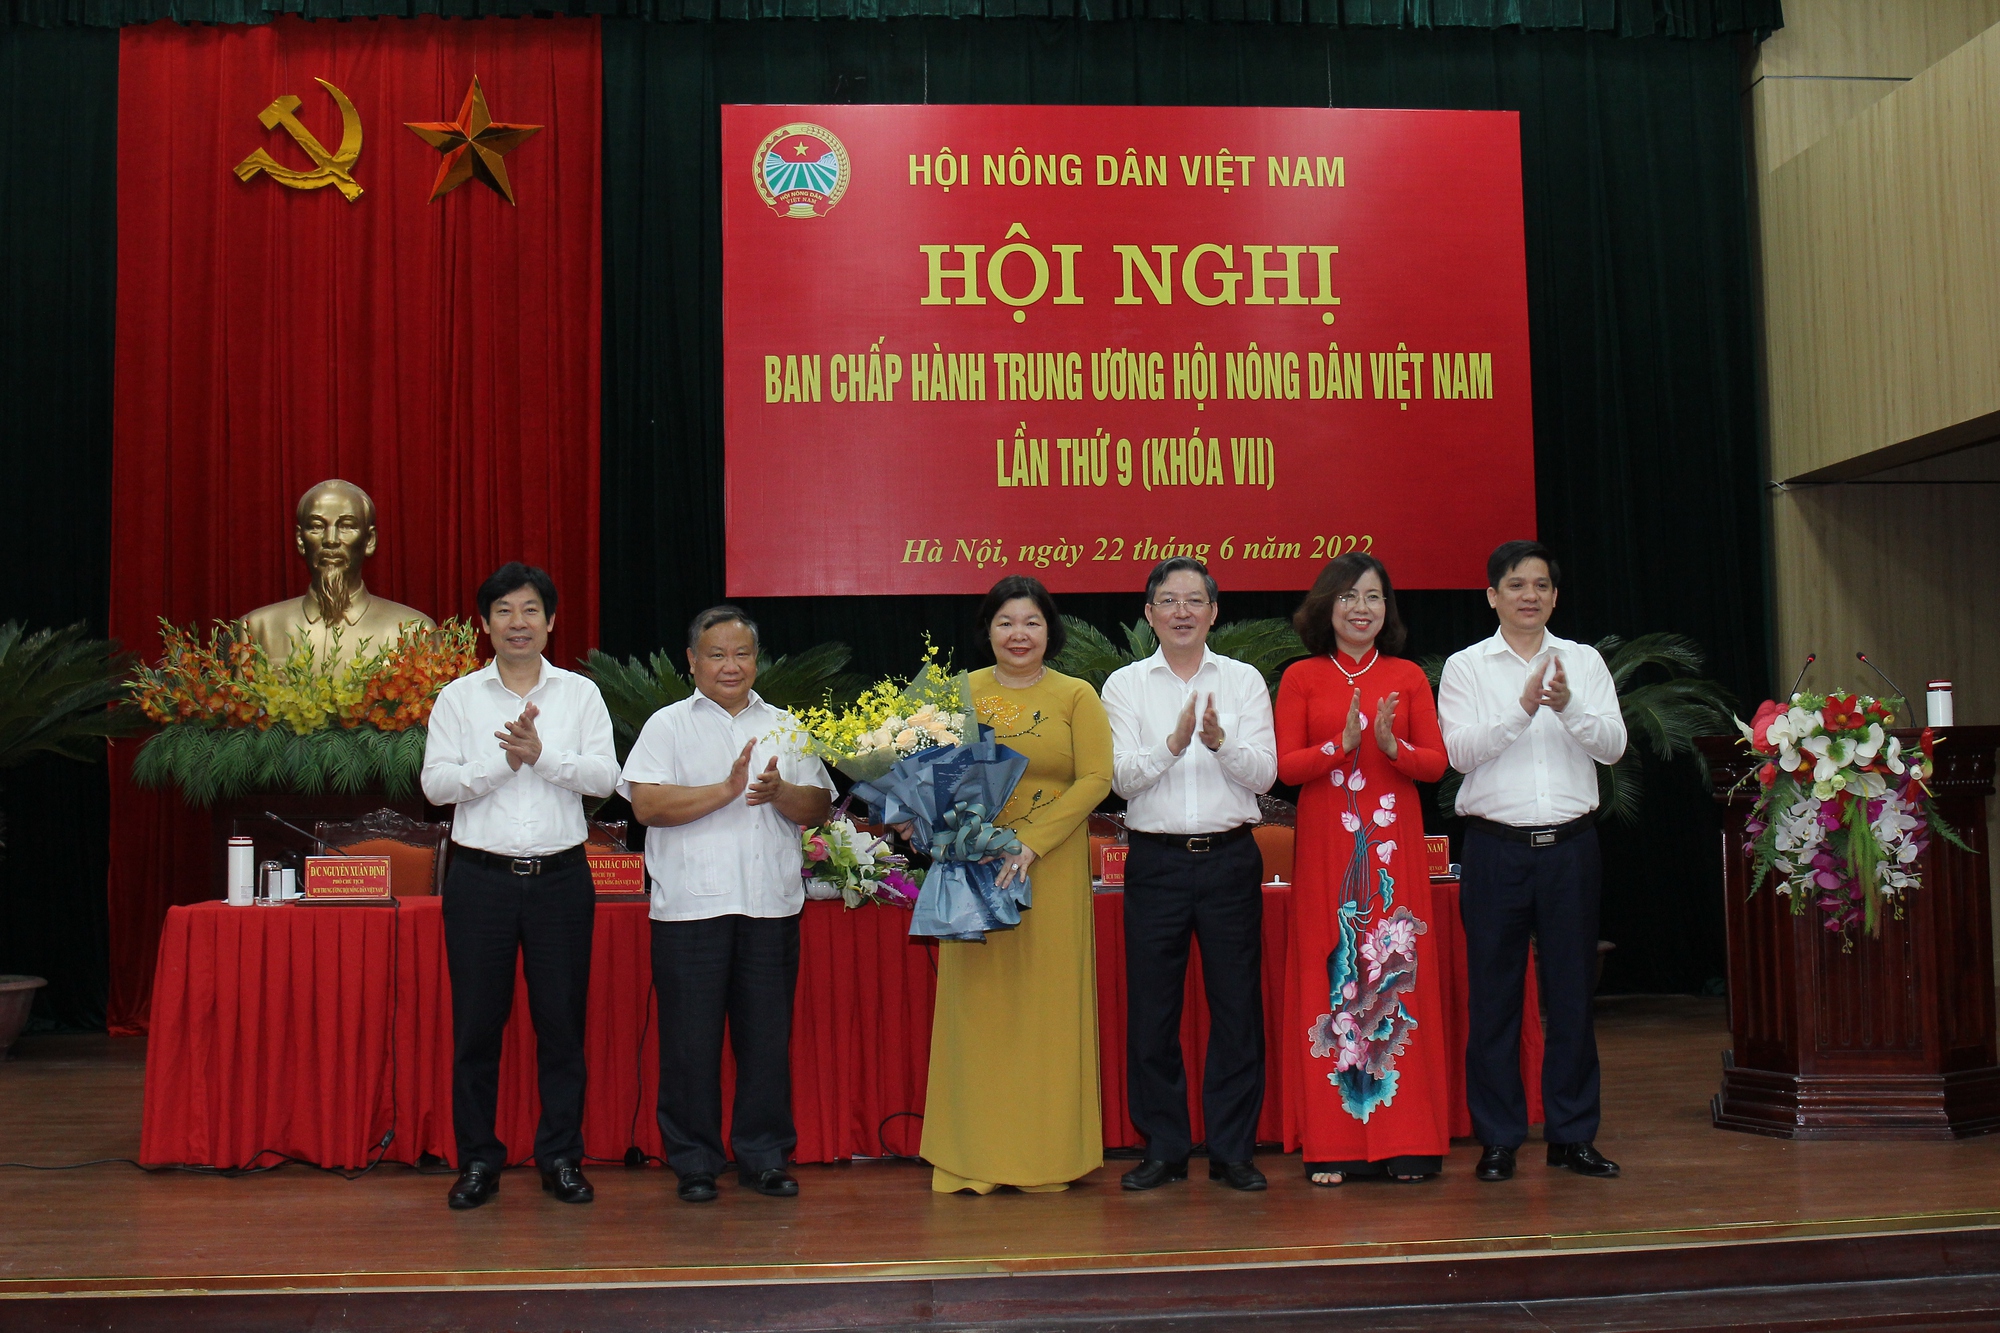 Tin mới: Bà Cao Xuân Thu Vân được bầu làm Phó Chủ tịch Ban Chấp hành Trung ương Hội Nông dân Việt Nam - Ảnh 2.